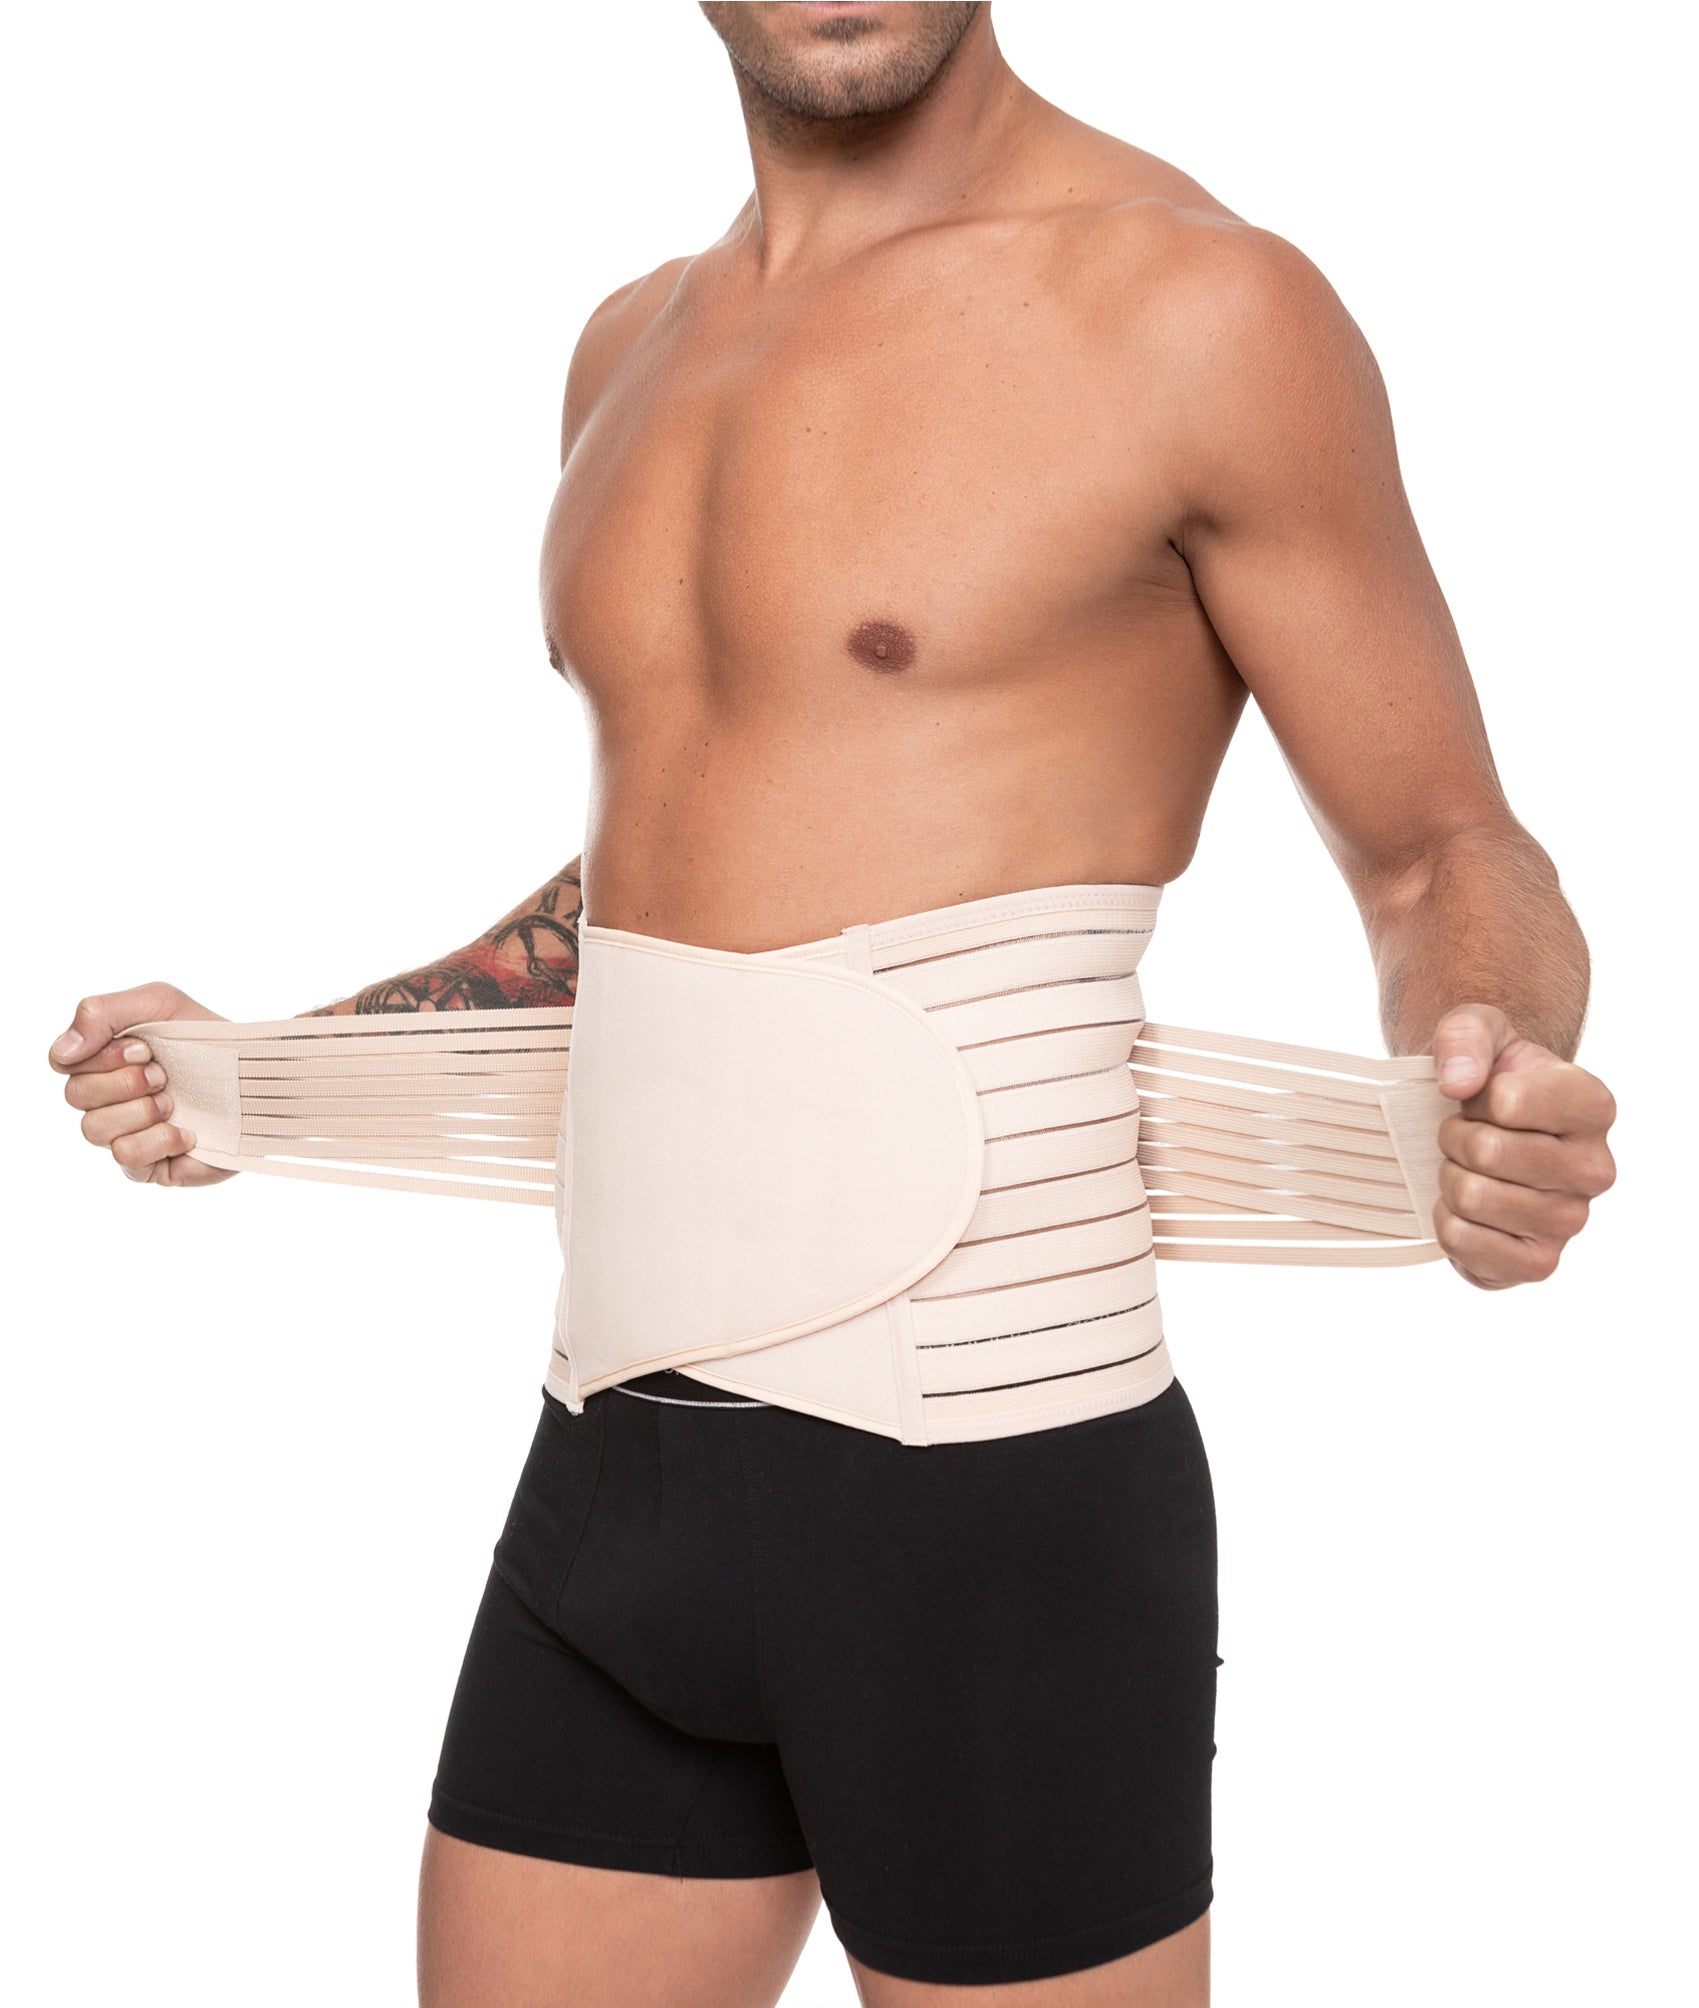 Channo Pack de 2 Fajas Cinturones Lumbares para Espalda Hombre y Mujer